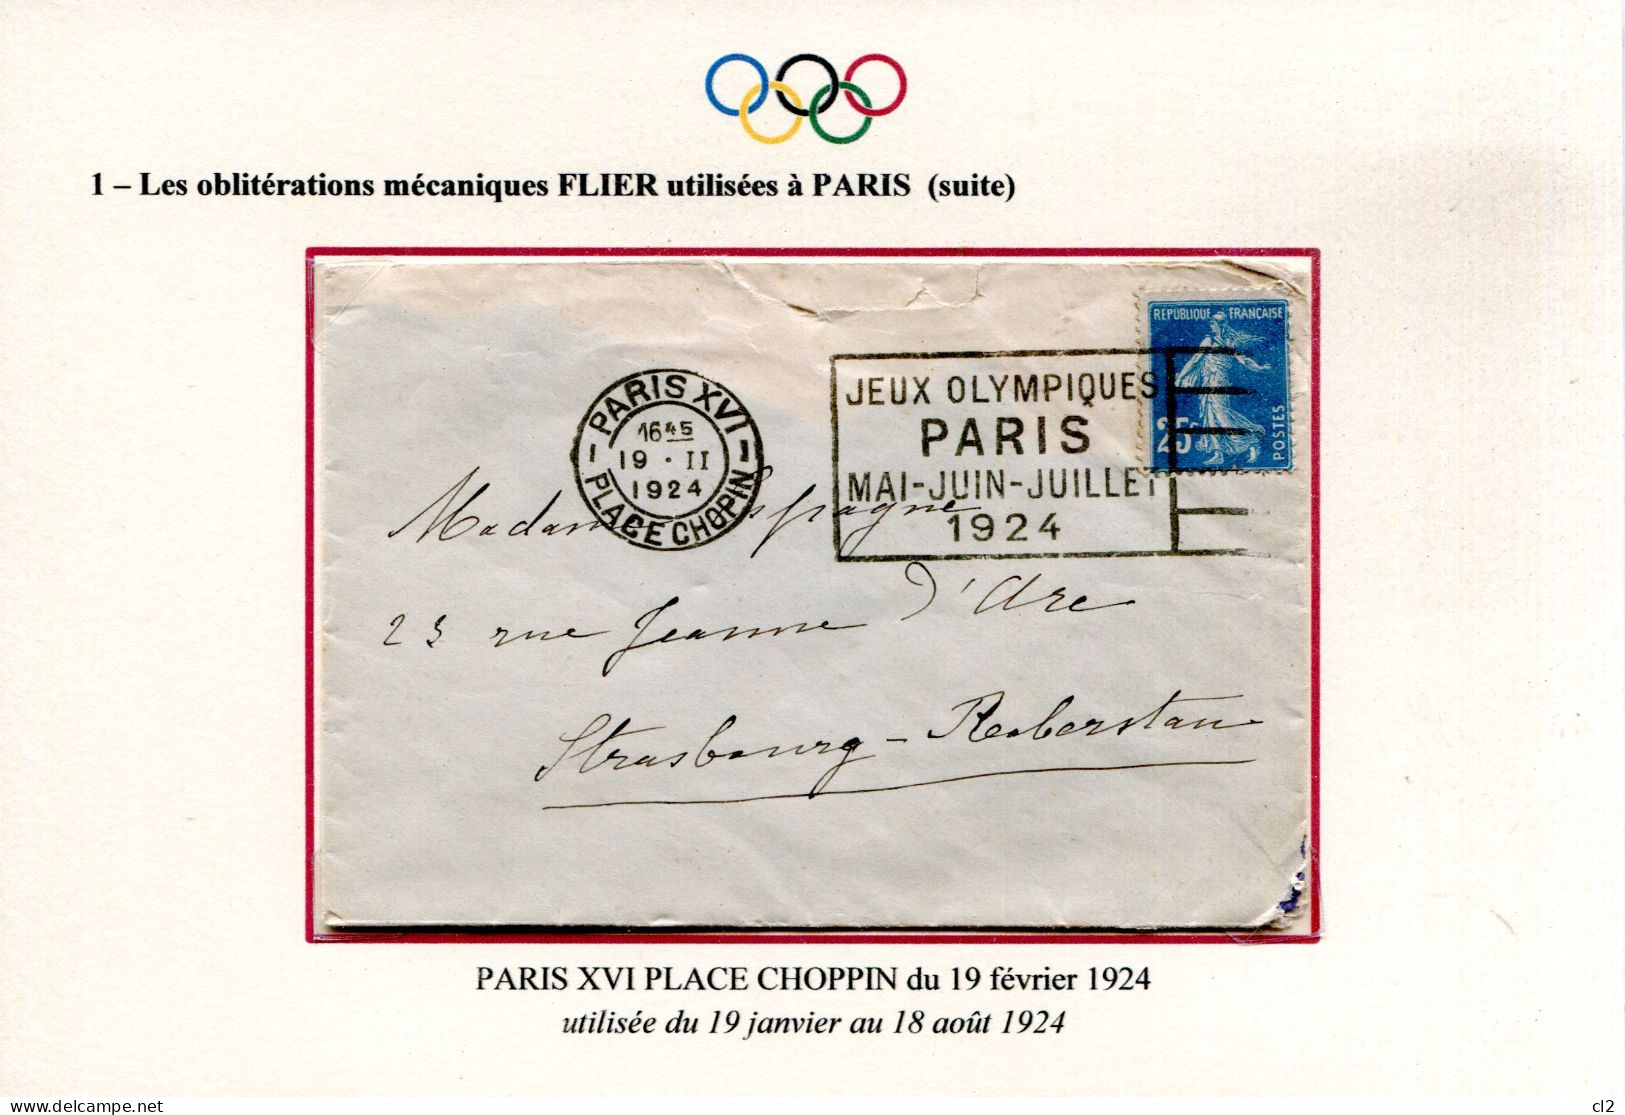 Jeux Olympiques PARIS 1924 - Oblitération Mécanique FLIER " PARIS PLACE CHOPIN" - Ete 1924: Paris